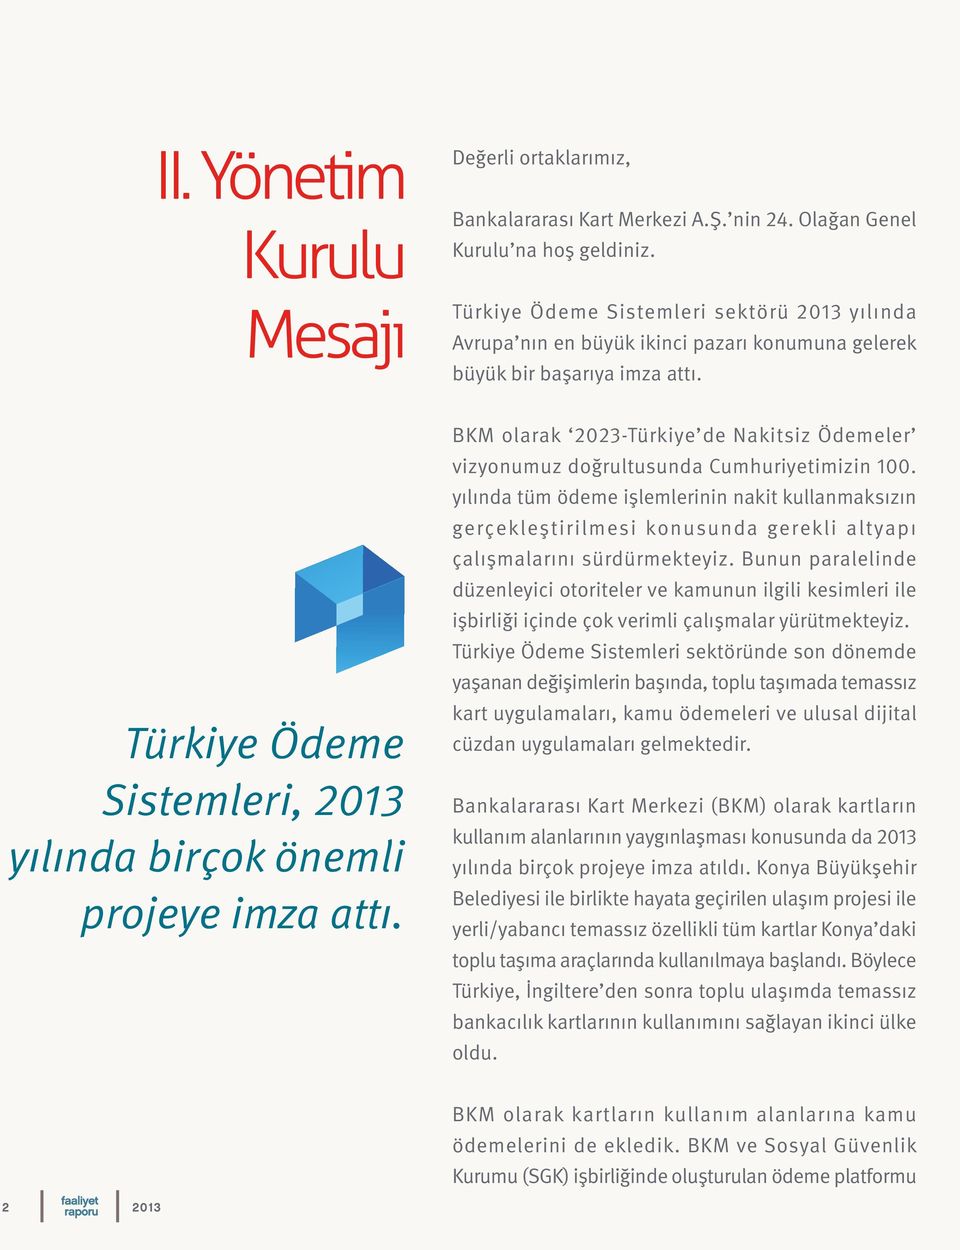 BKM olarak 2023-Türkiye de Nakitsiz Ödemeler vizyonumuz doğrultusunda Cumhuriyetimizin 100.